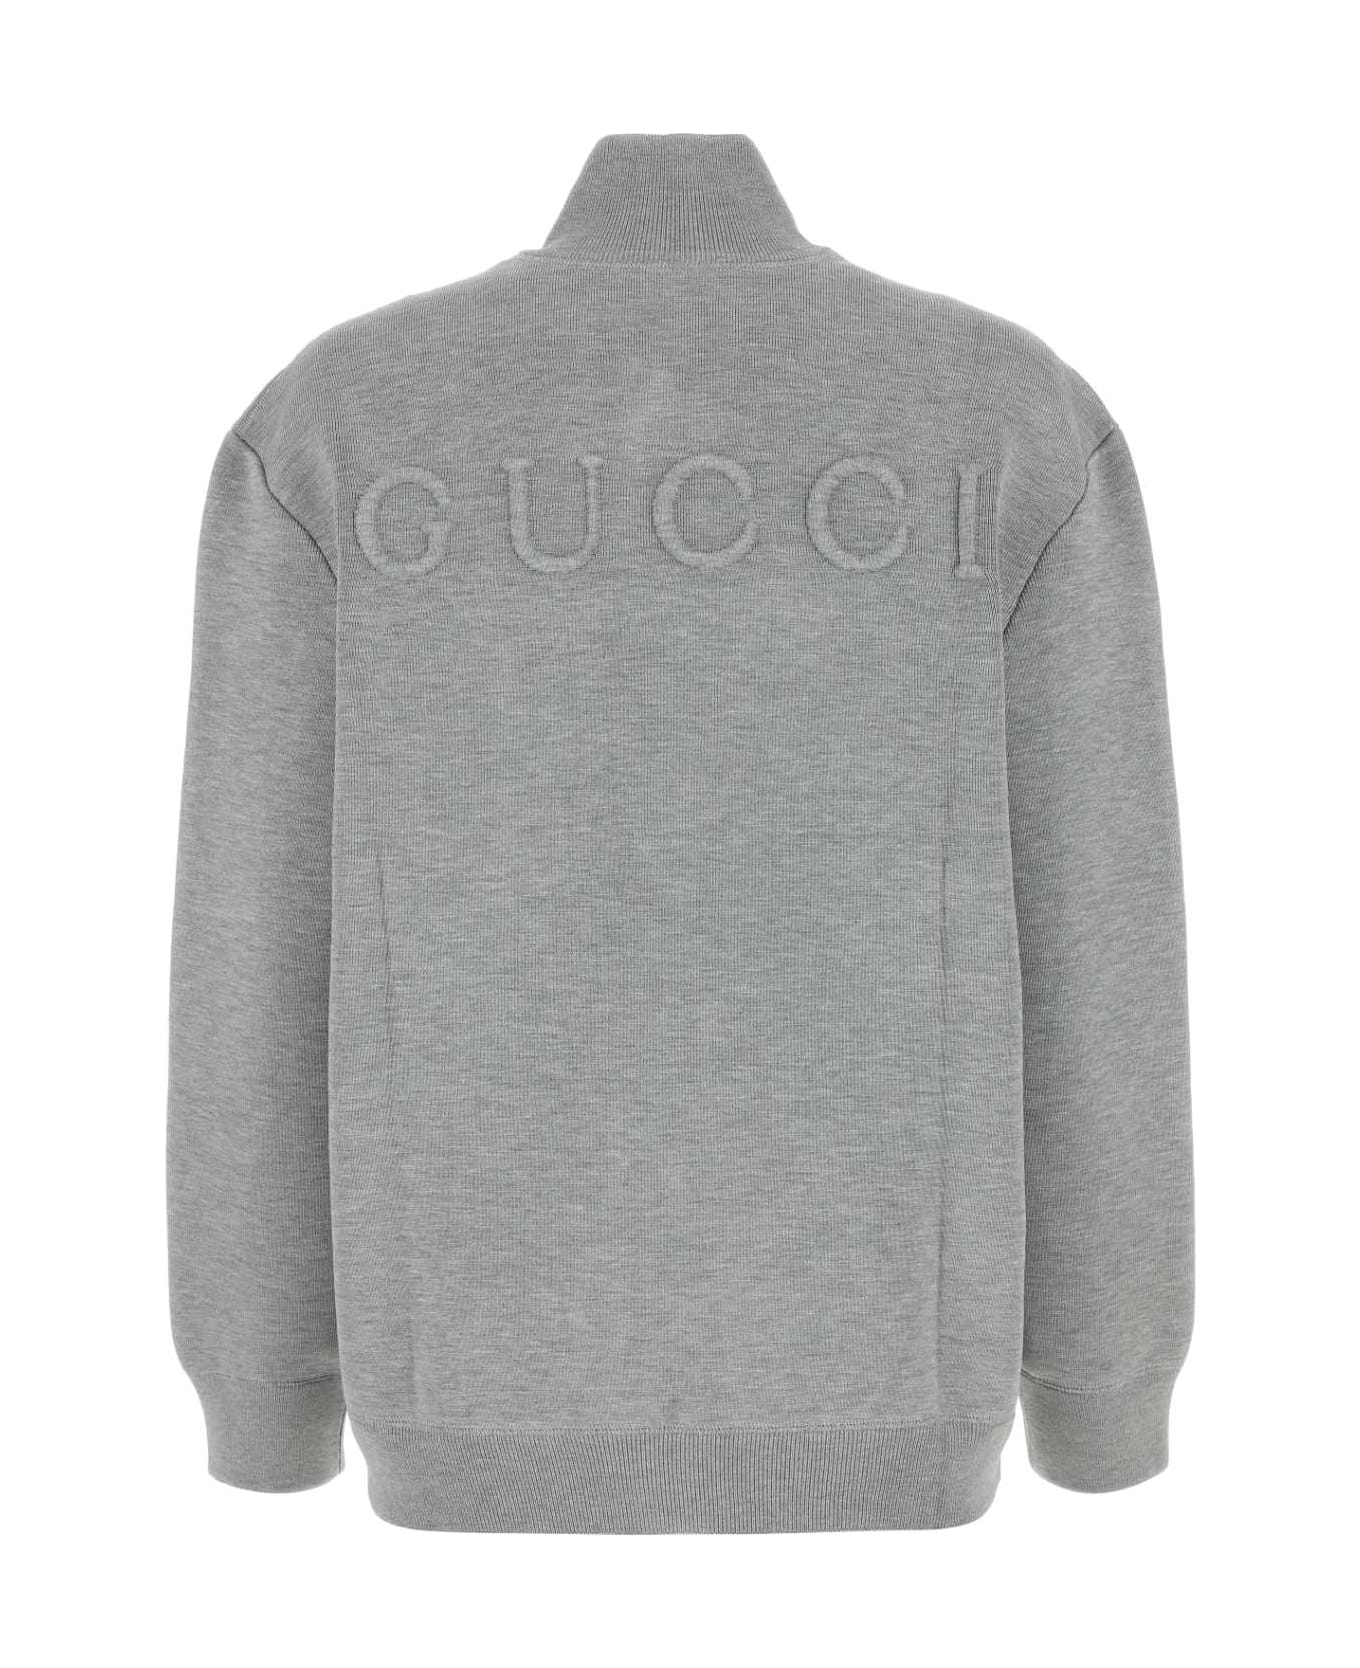 Gucci Grey Stretch Wool Blend Cardigan - LIGHTGREYMELANGE